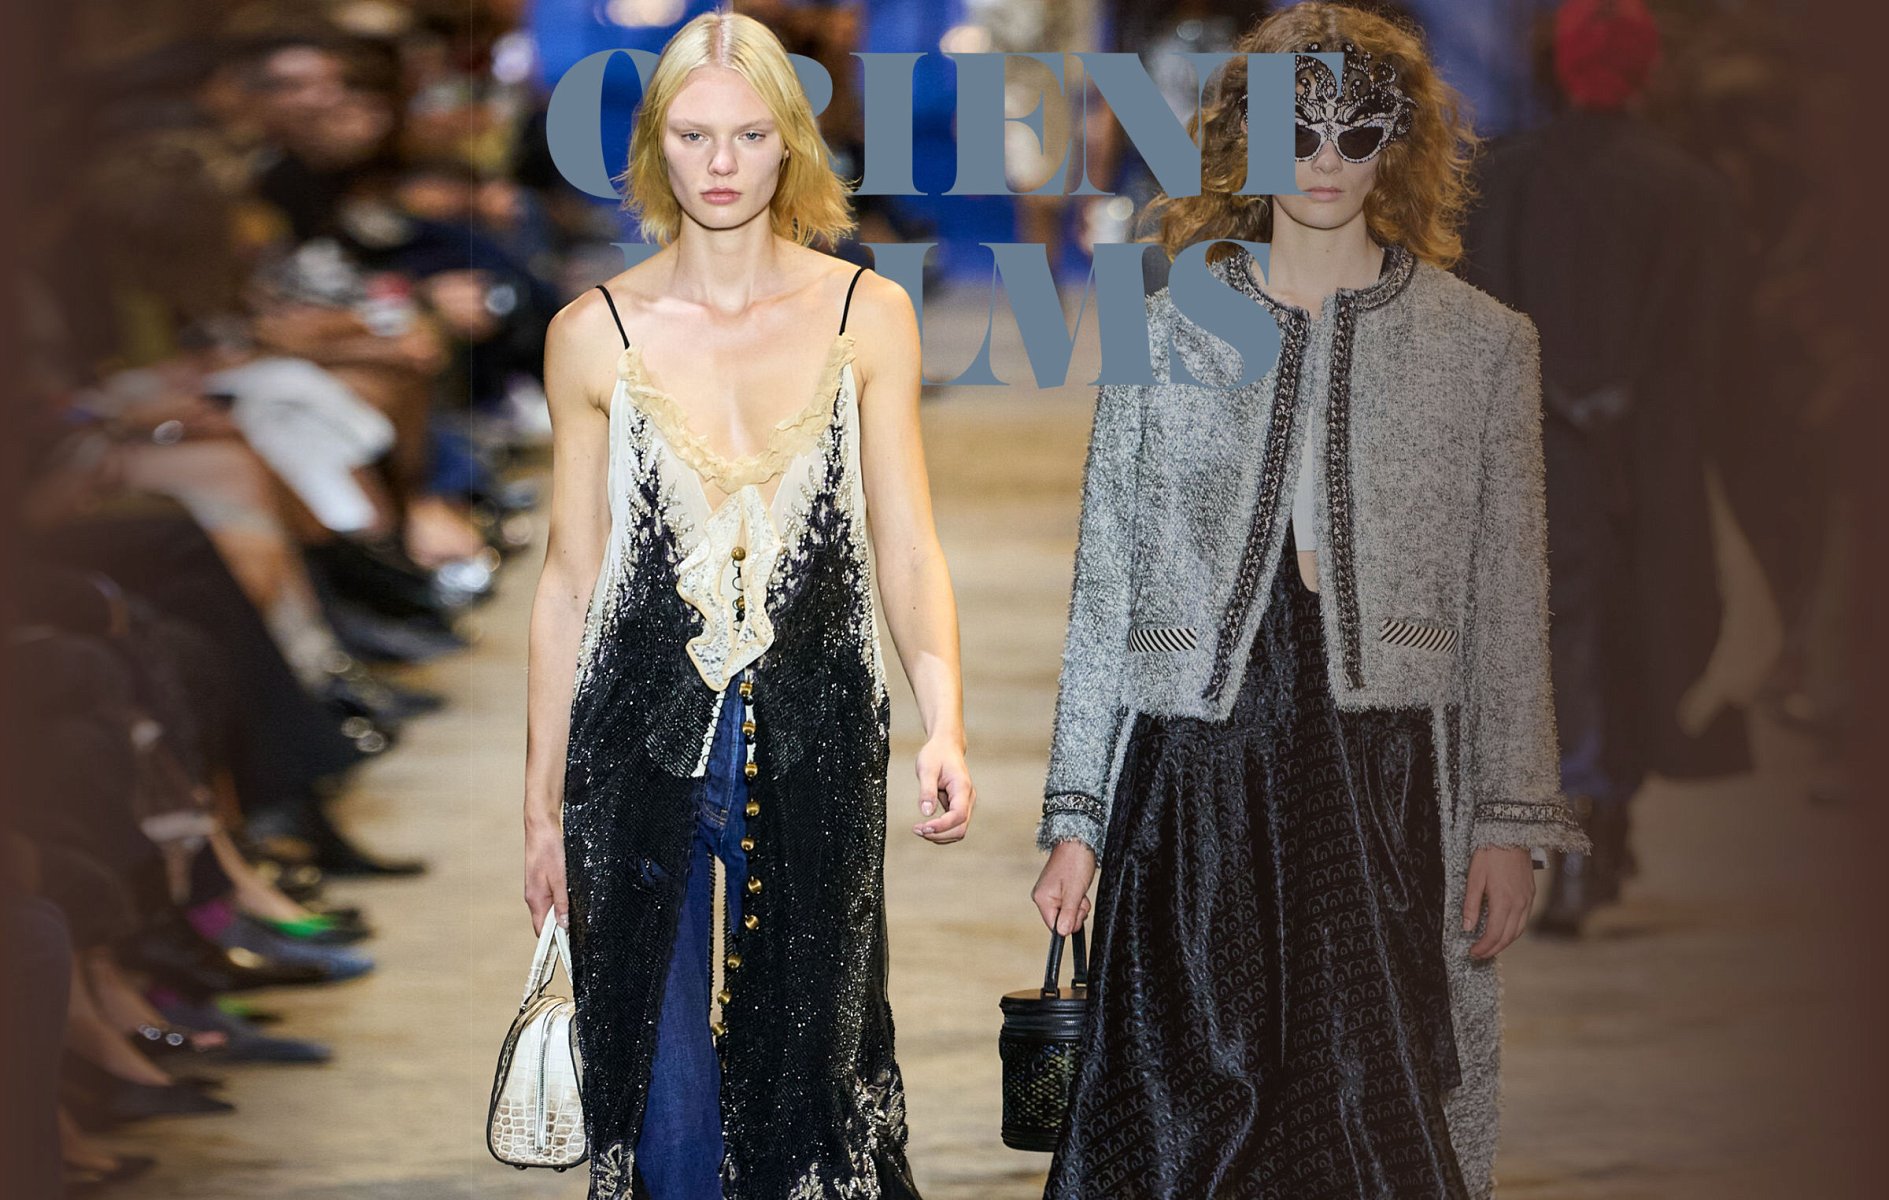 Louis Vuitton Spring 2022 Ready-to-Wear at Paris Fashion Week